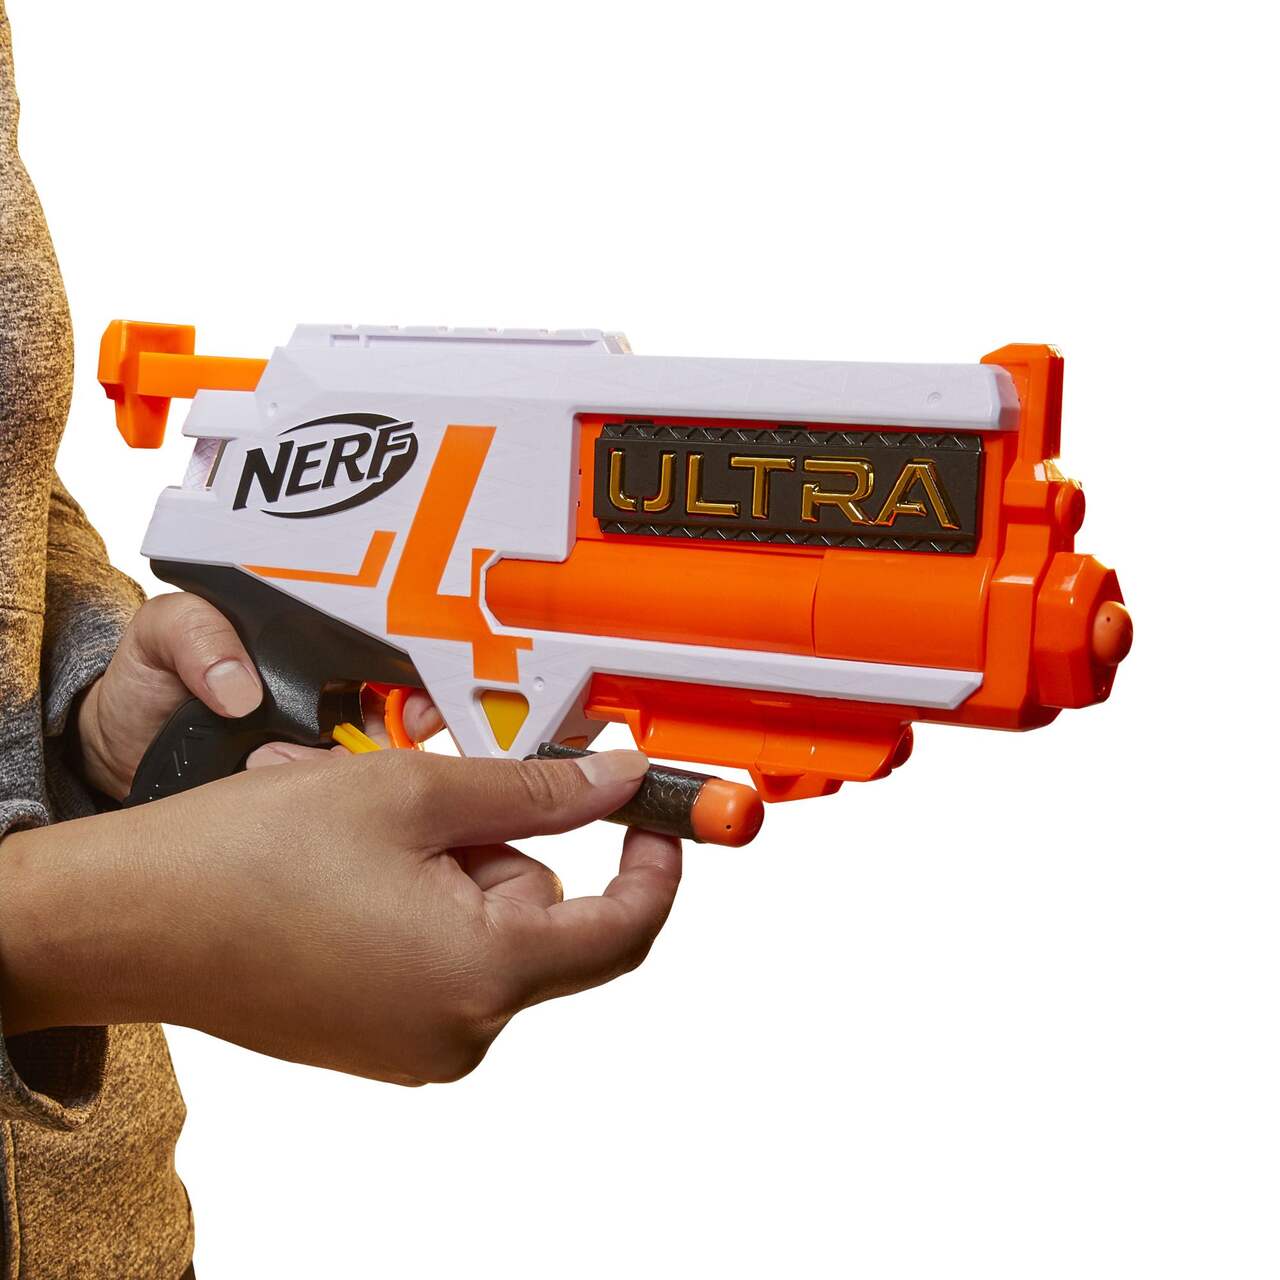 L'industrie c'est fou] Ce pistolet Nerf géant tire des fléchettes